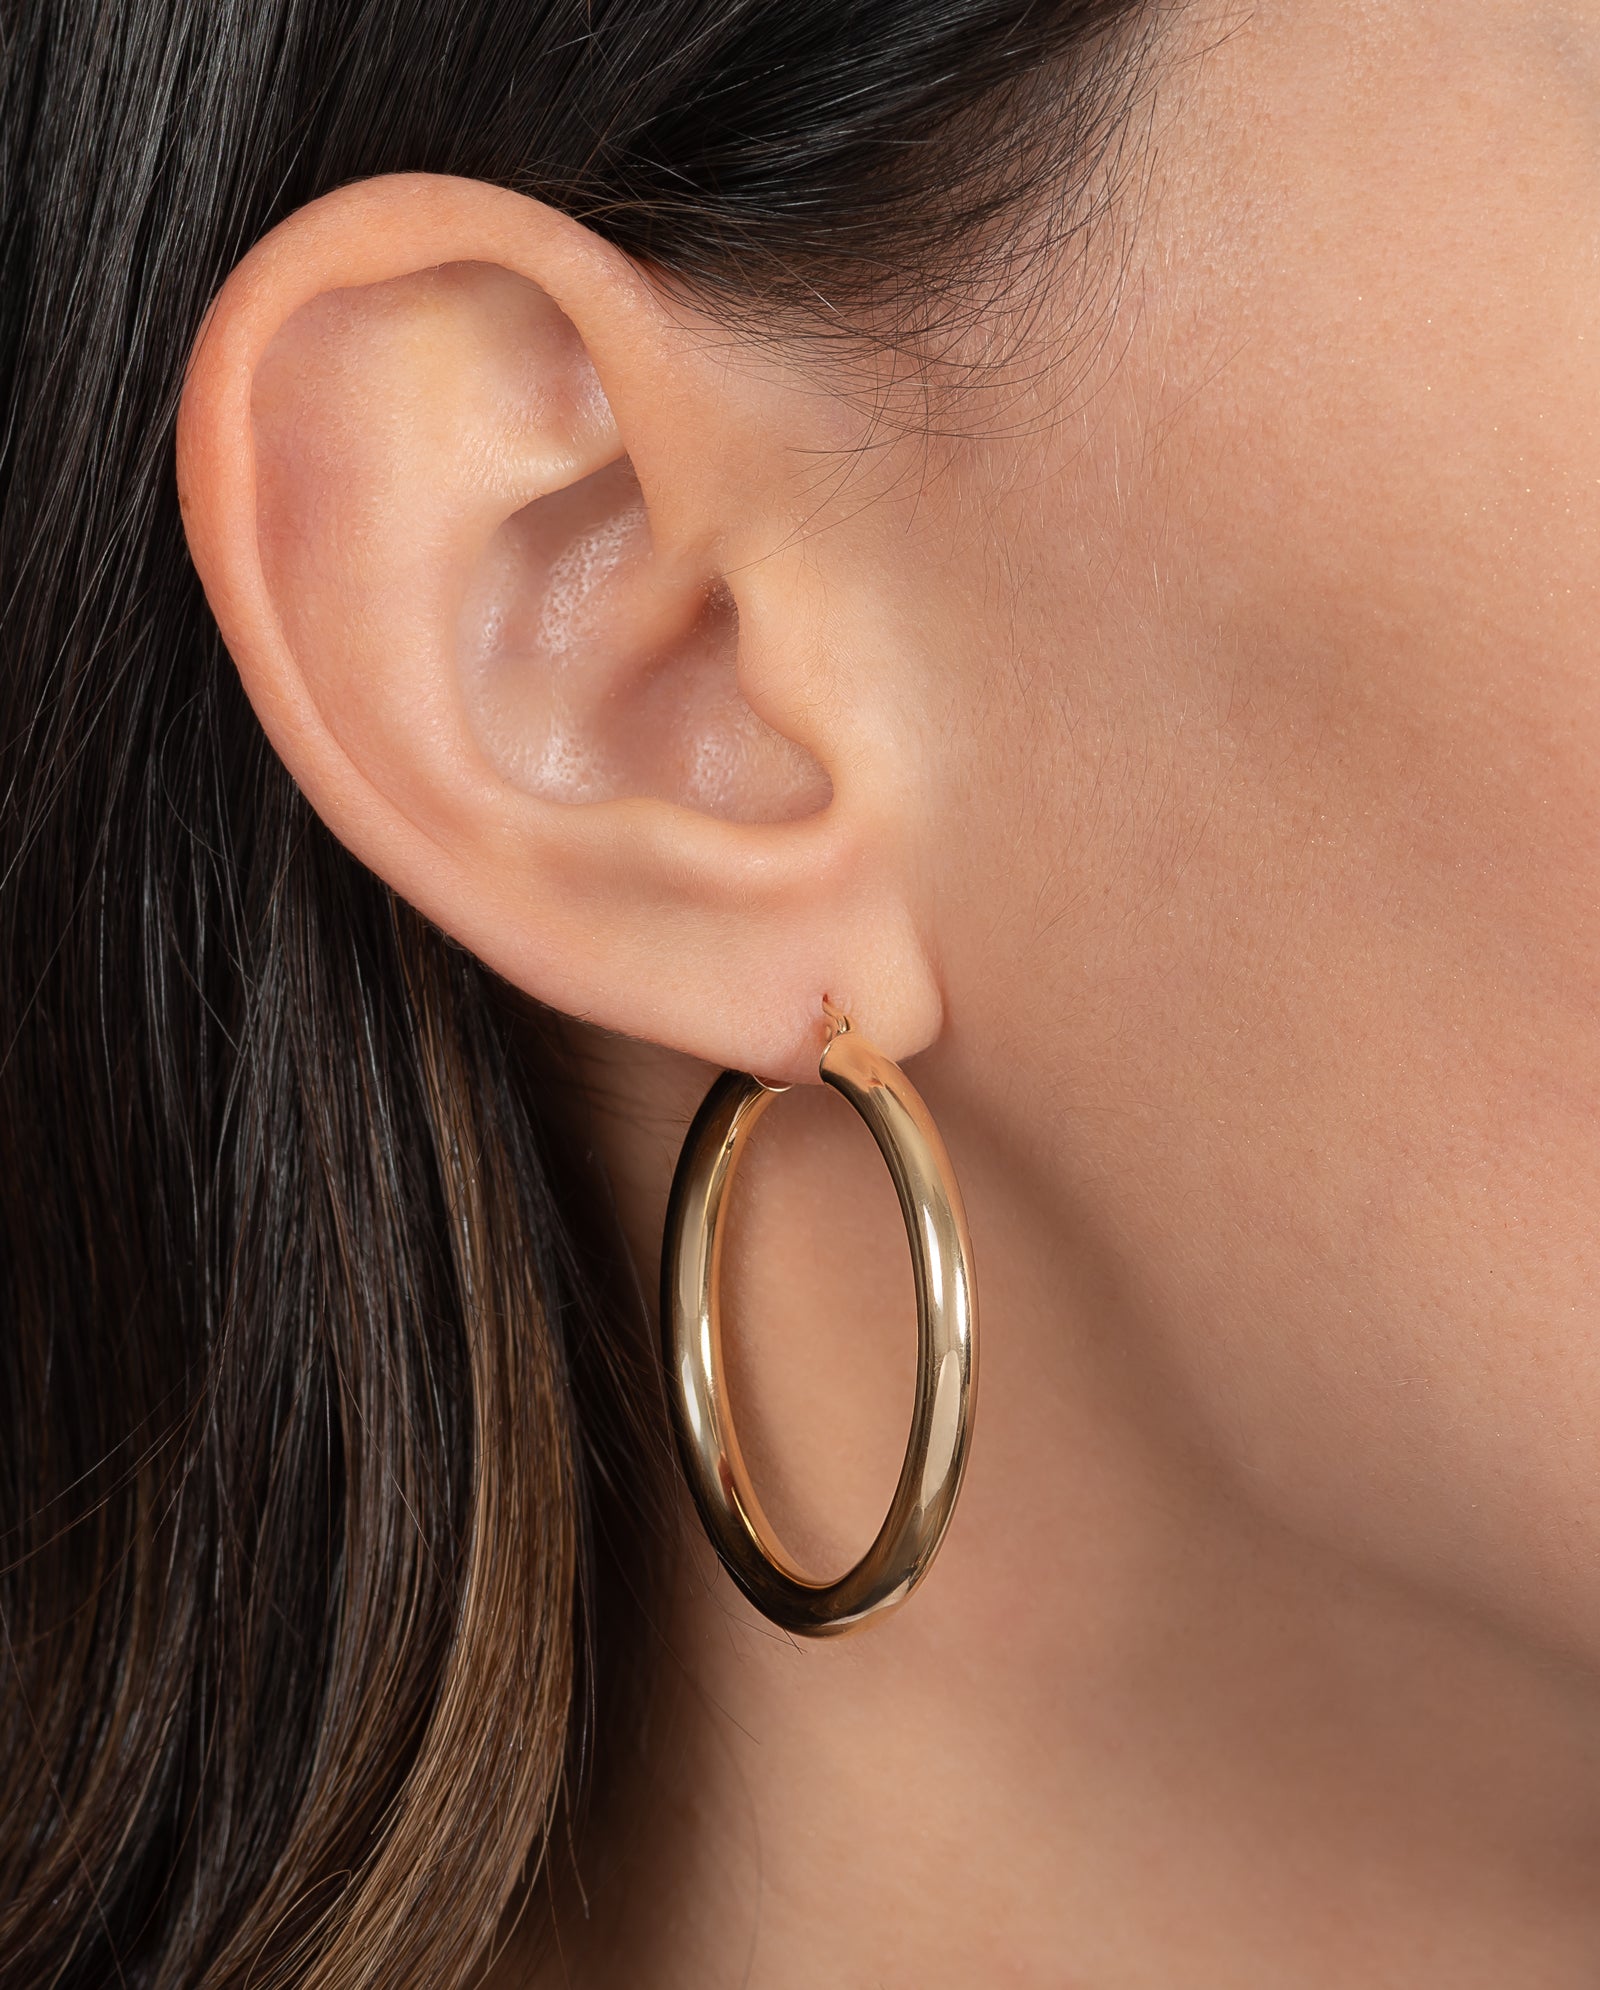 Buy Small Gold Hoop Earrings Gold Huggie Earrings Small Hoop Online in  India  Etsy